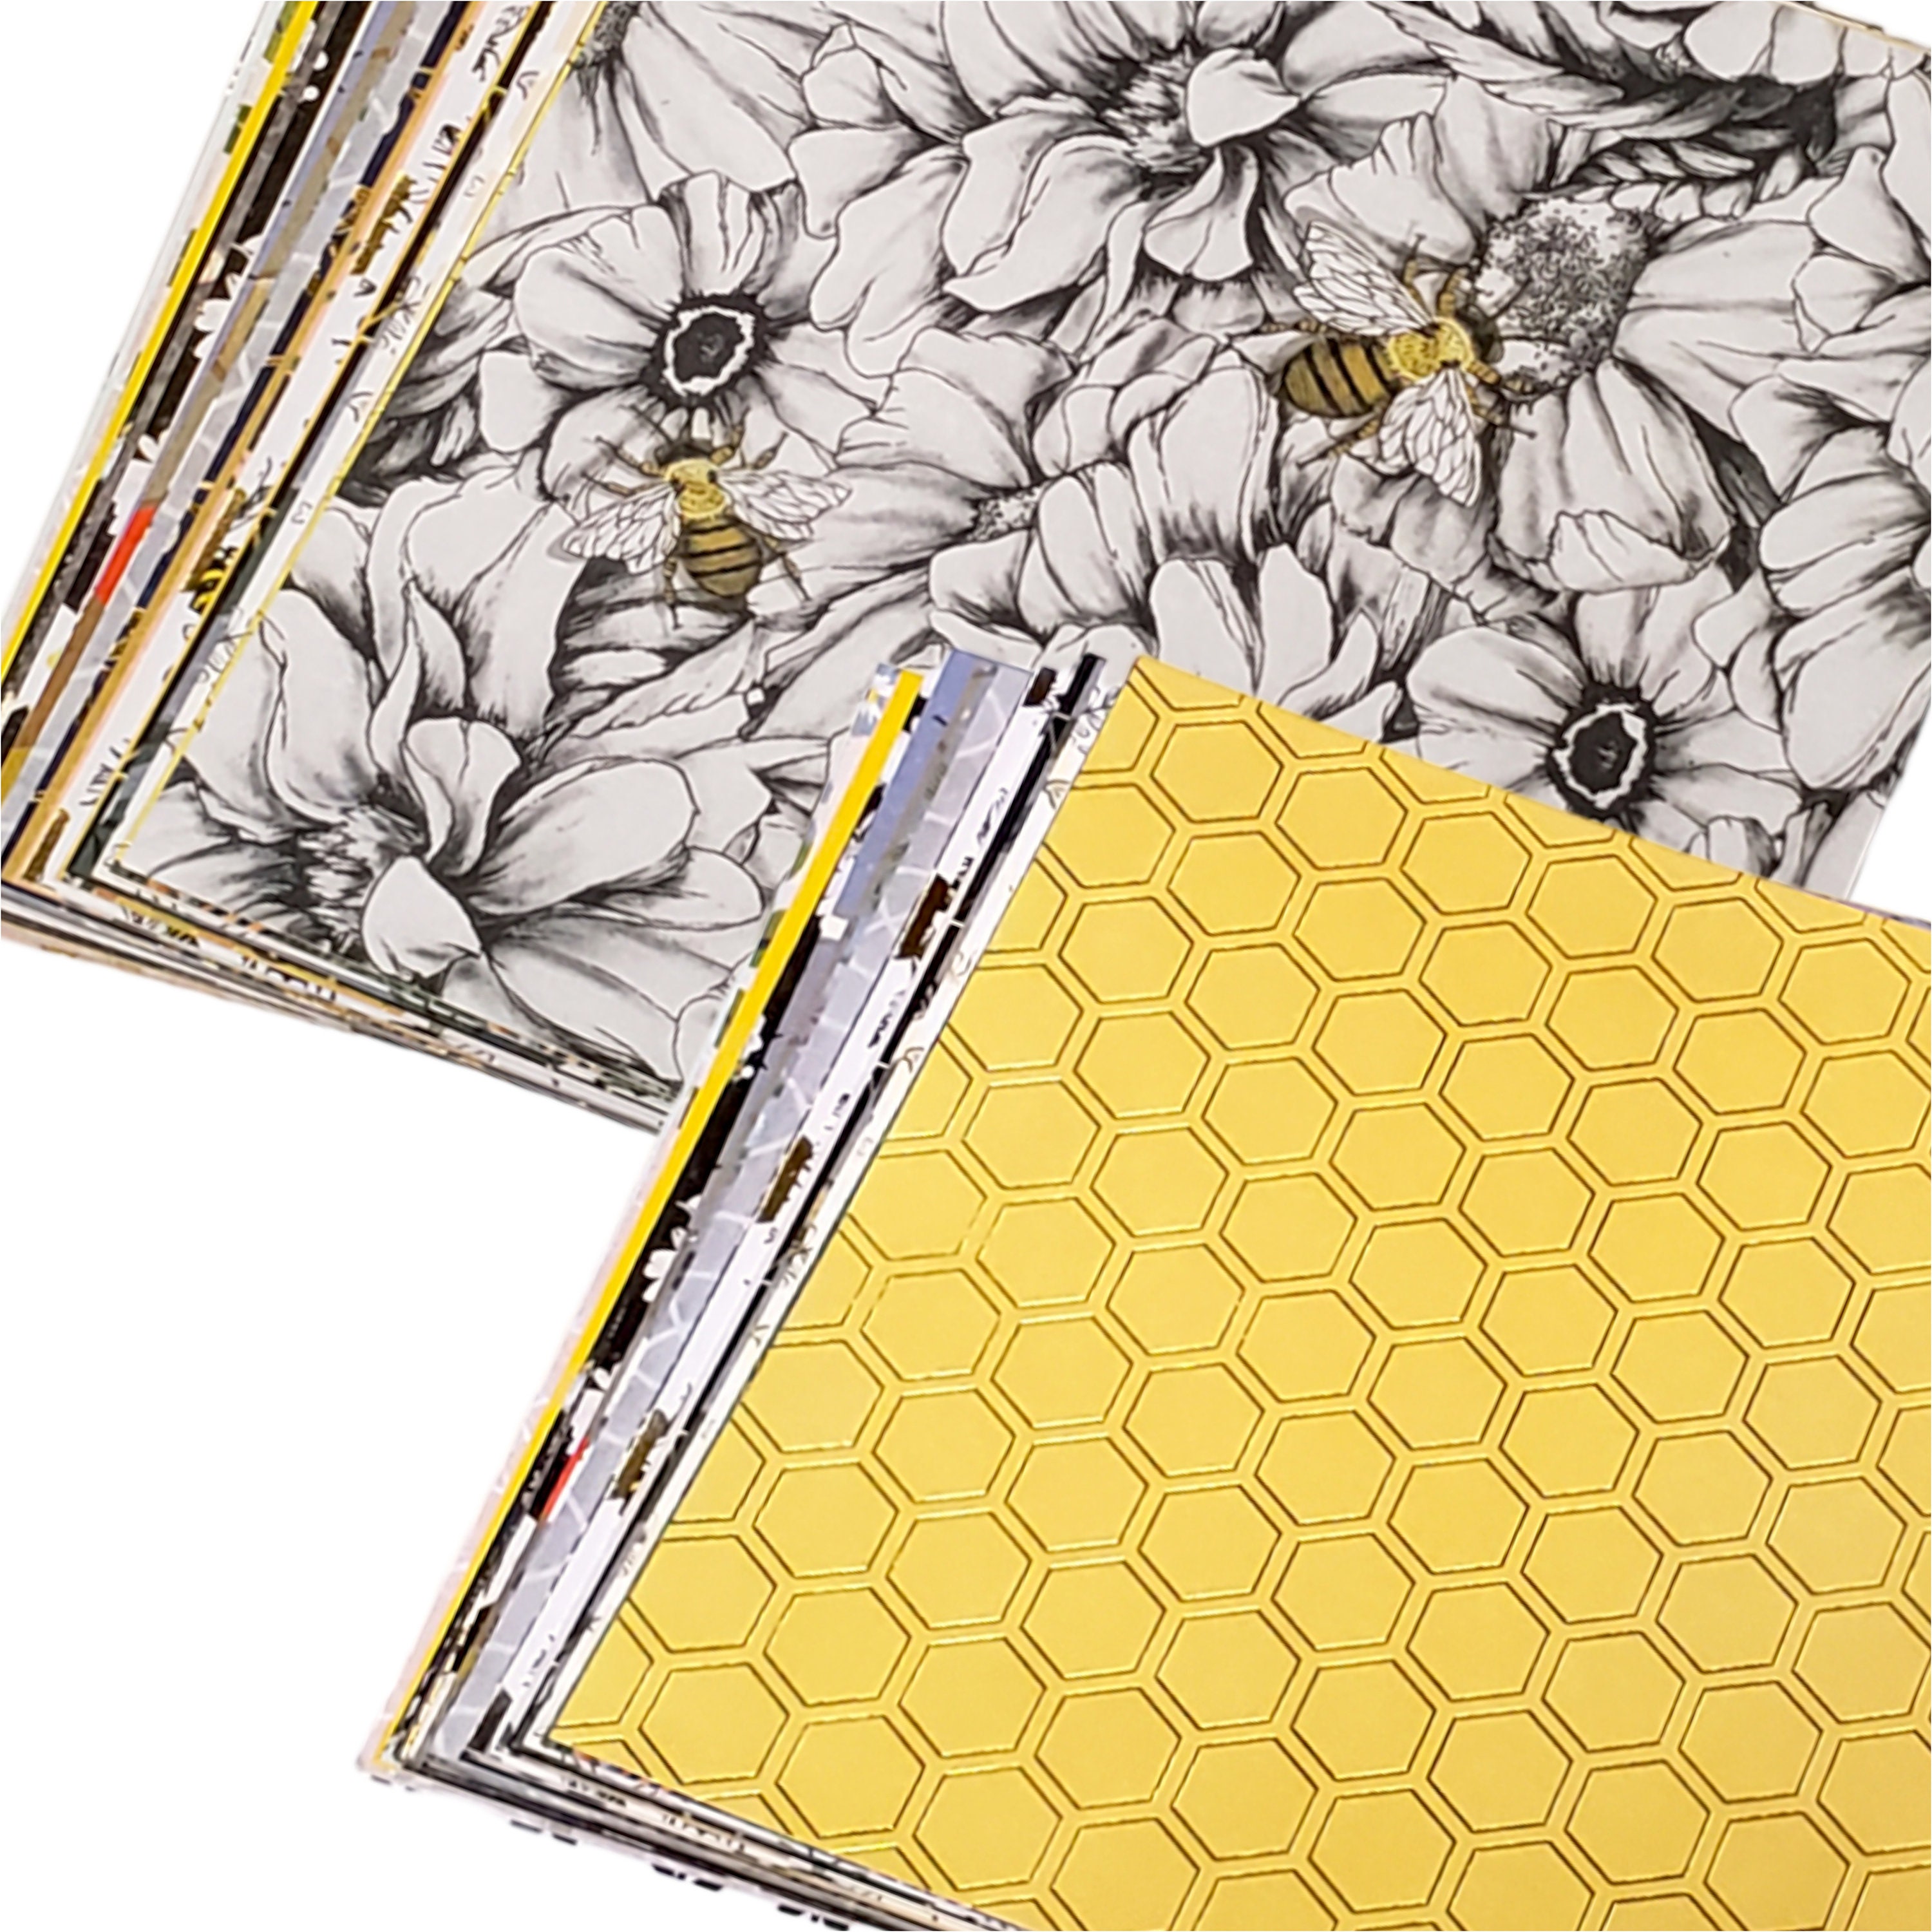 Honey Bee - Bee Hive Stamp & Die Bundle – Legacy Paper Arts